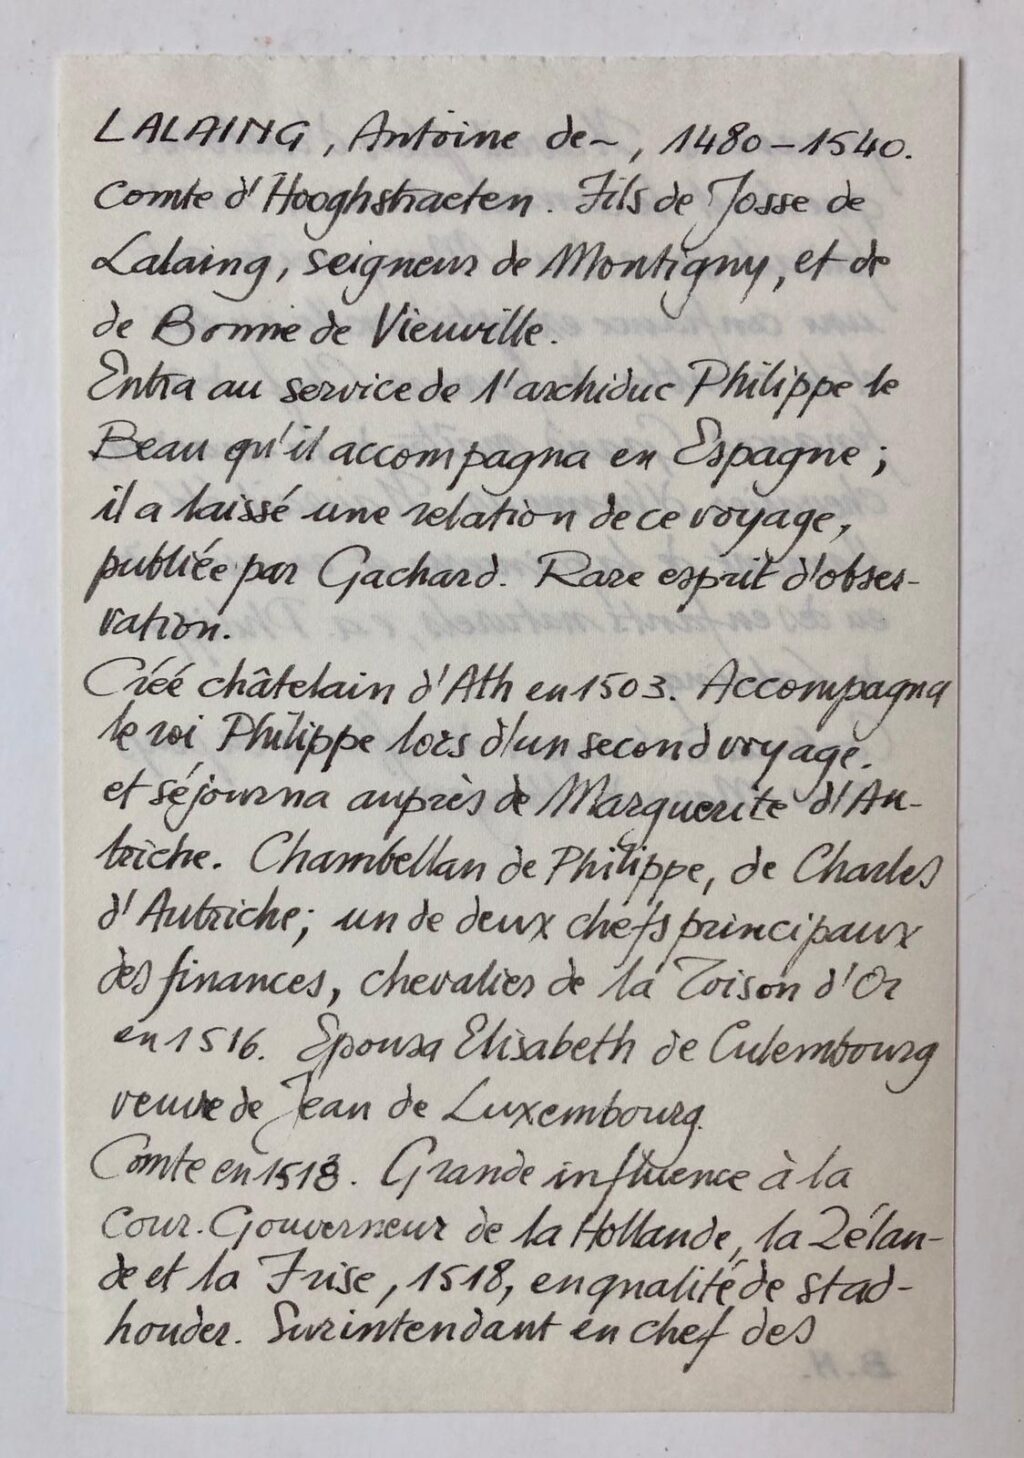 [Manuscript 1530] Acte waarbij Anthonie de Lalaing, graaf van Hoogstraten, een aantal financiële regelingen maakt. D.d. 31-10-1530. Manuscript op papier, 28x20 cm, getekend A. de Lalaing.